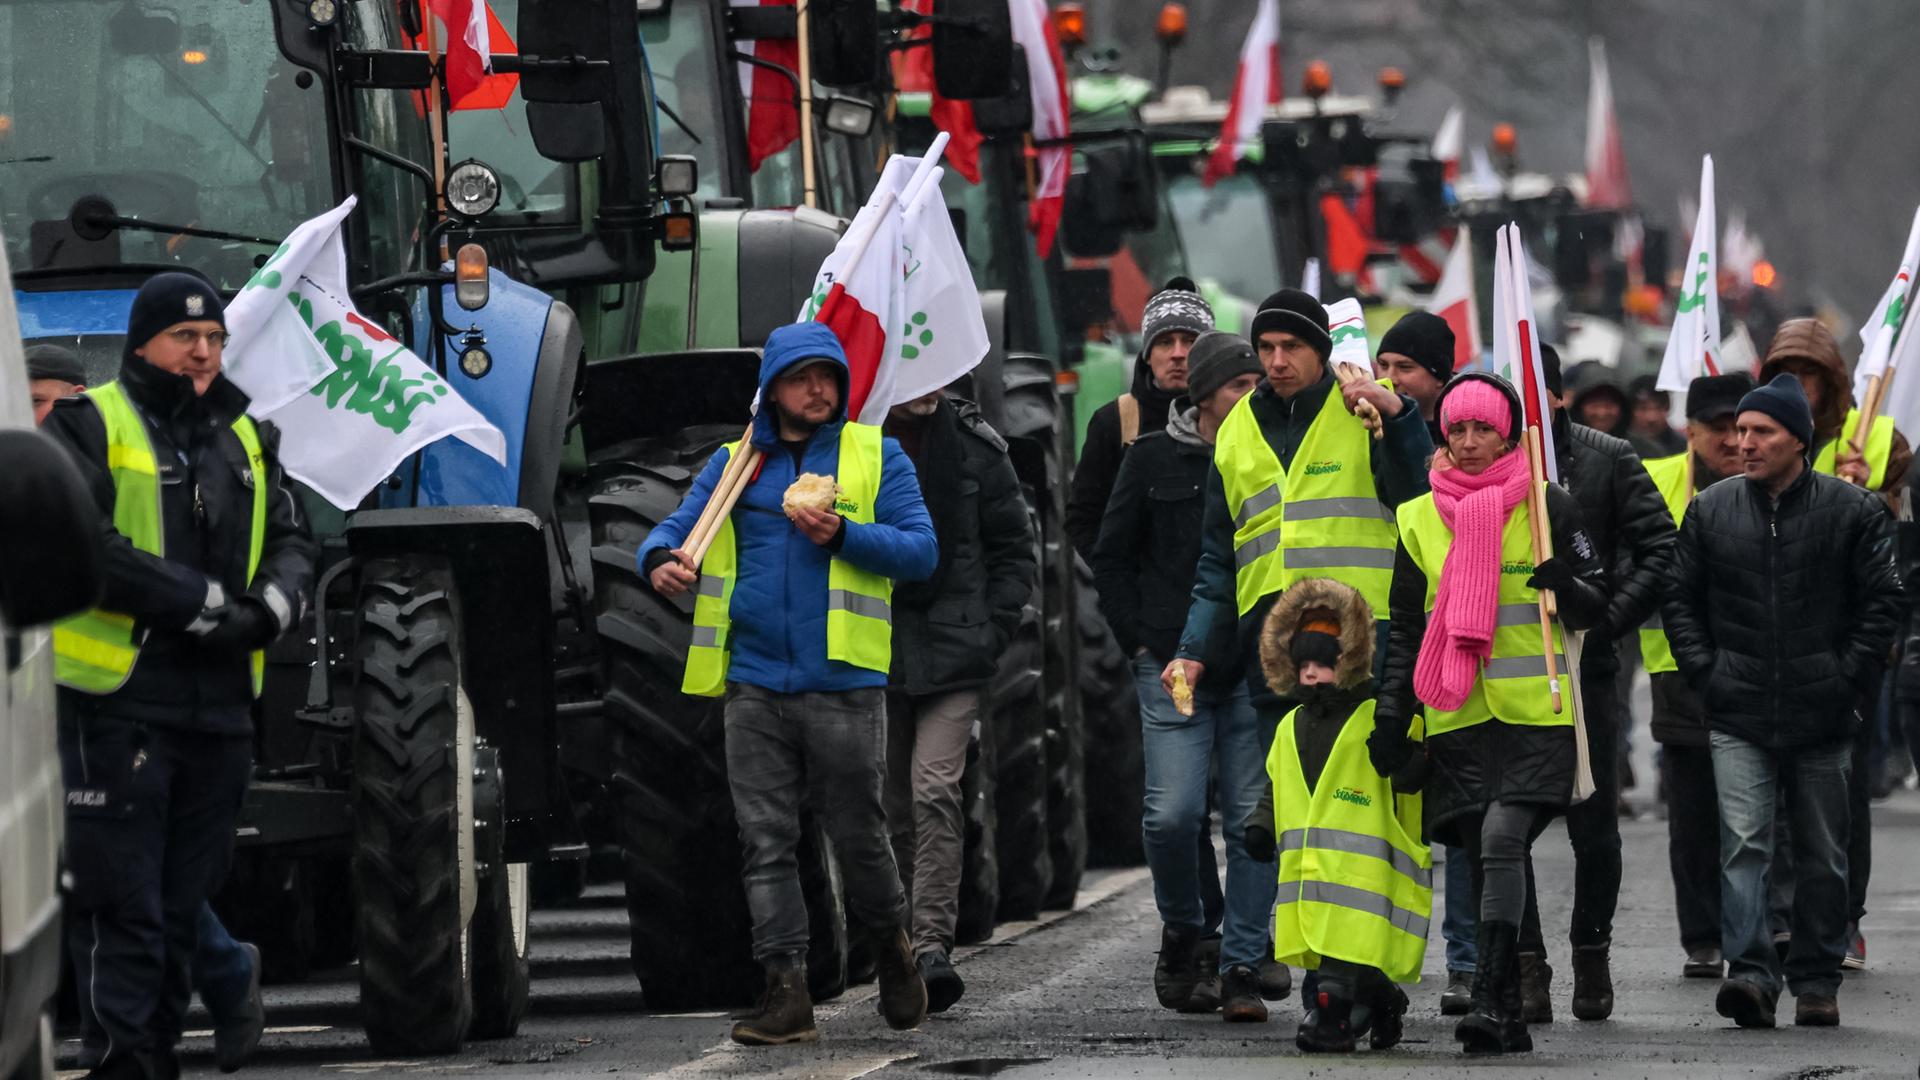 Bauern in gelben Warnwesten und mit Protestflaggen laufen an geparkten Traktoren vorbei.